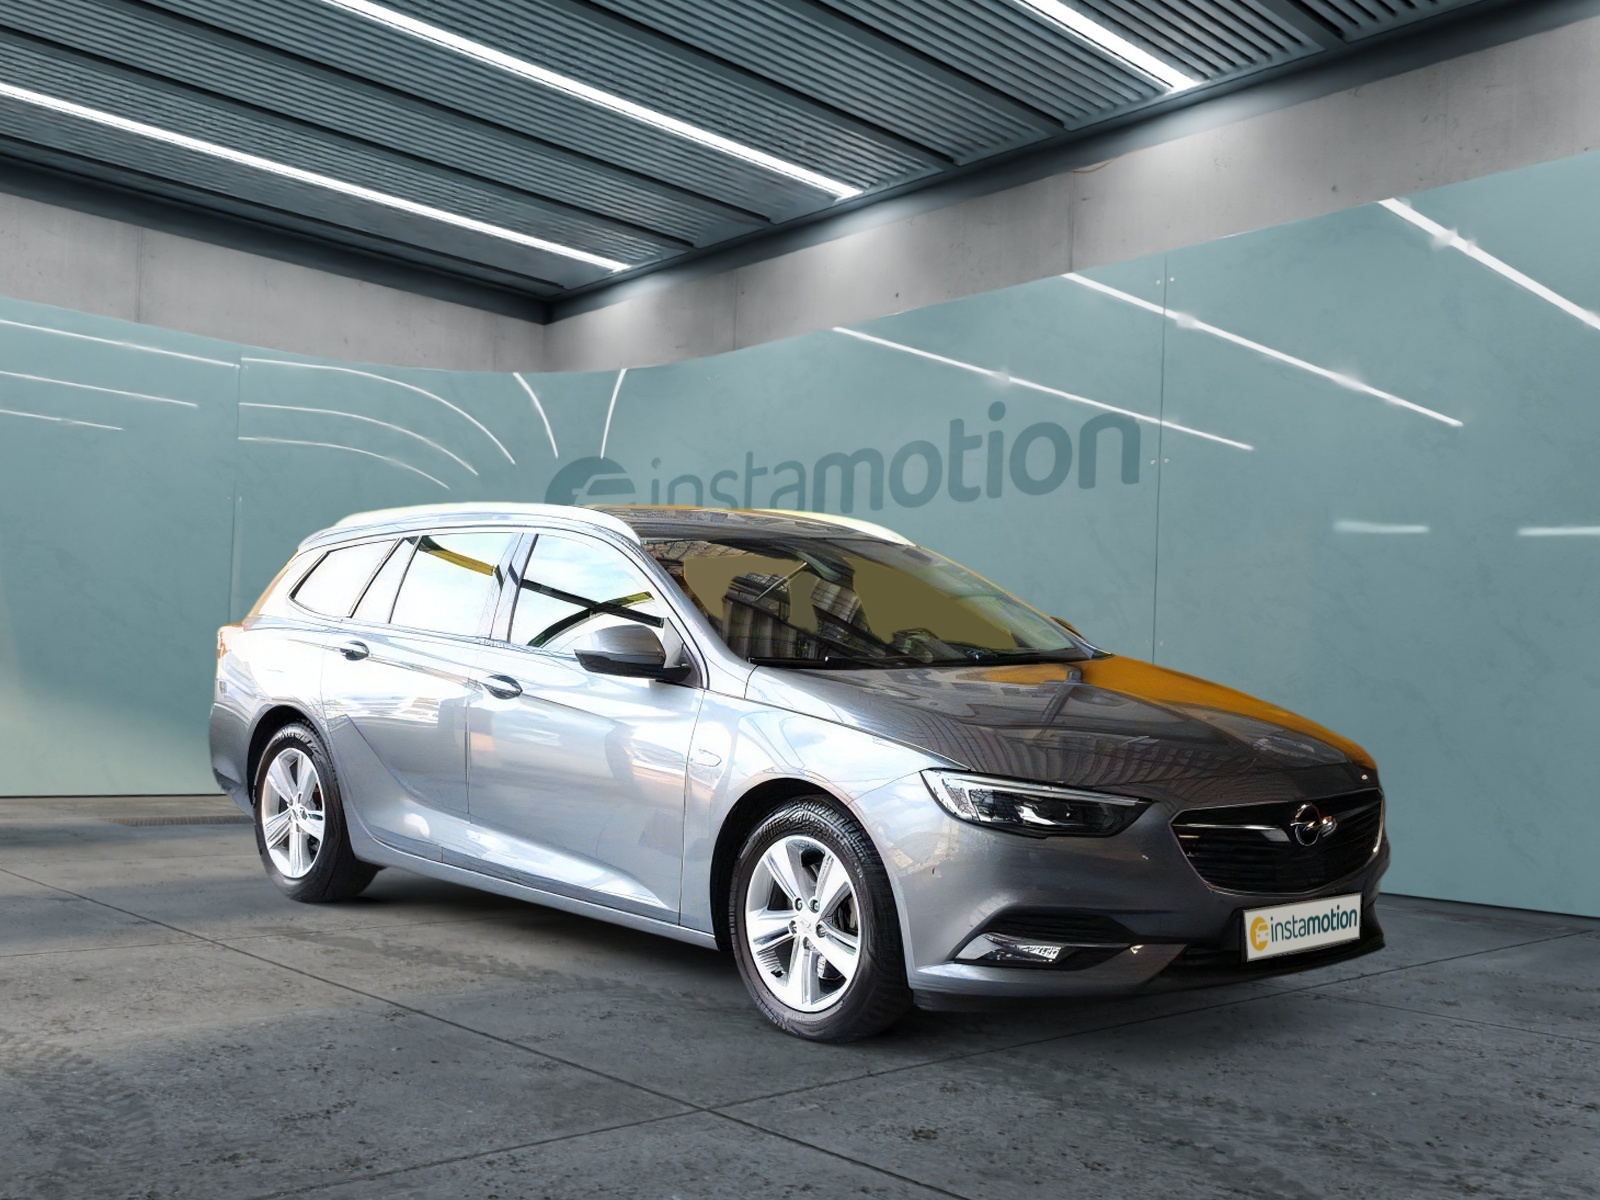 Opel Insignia INNOVATION